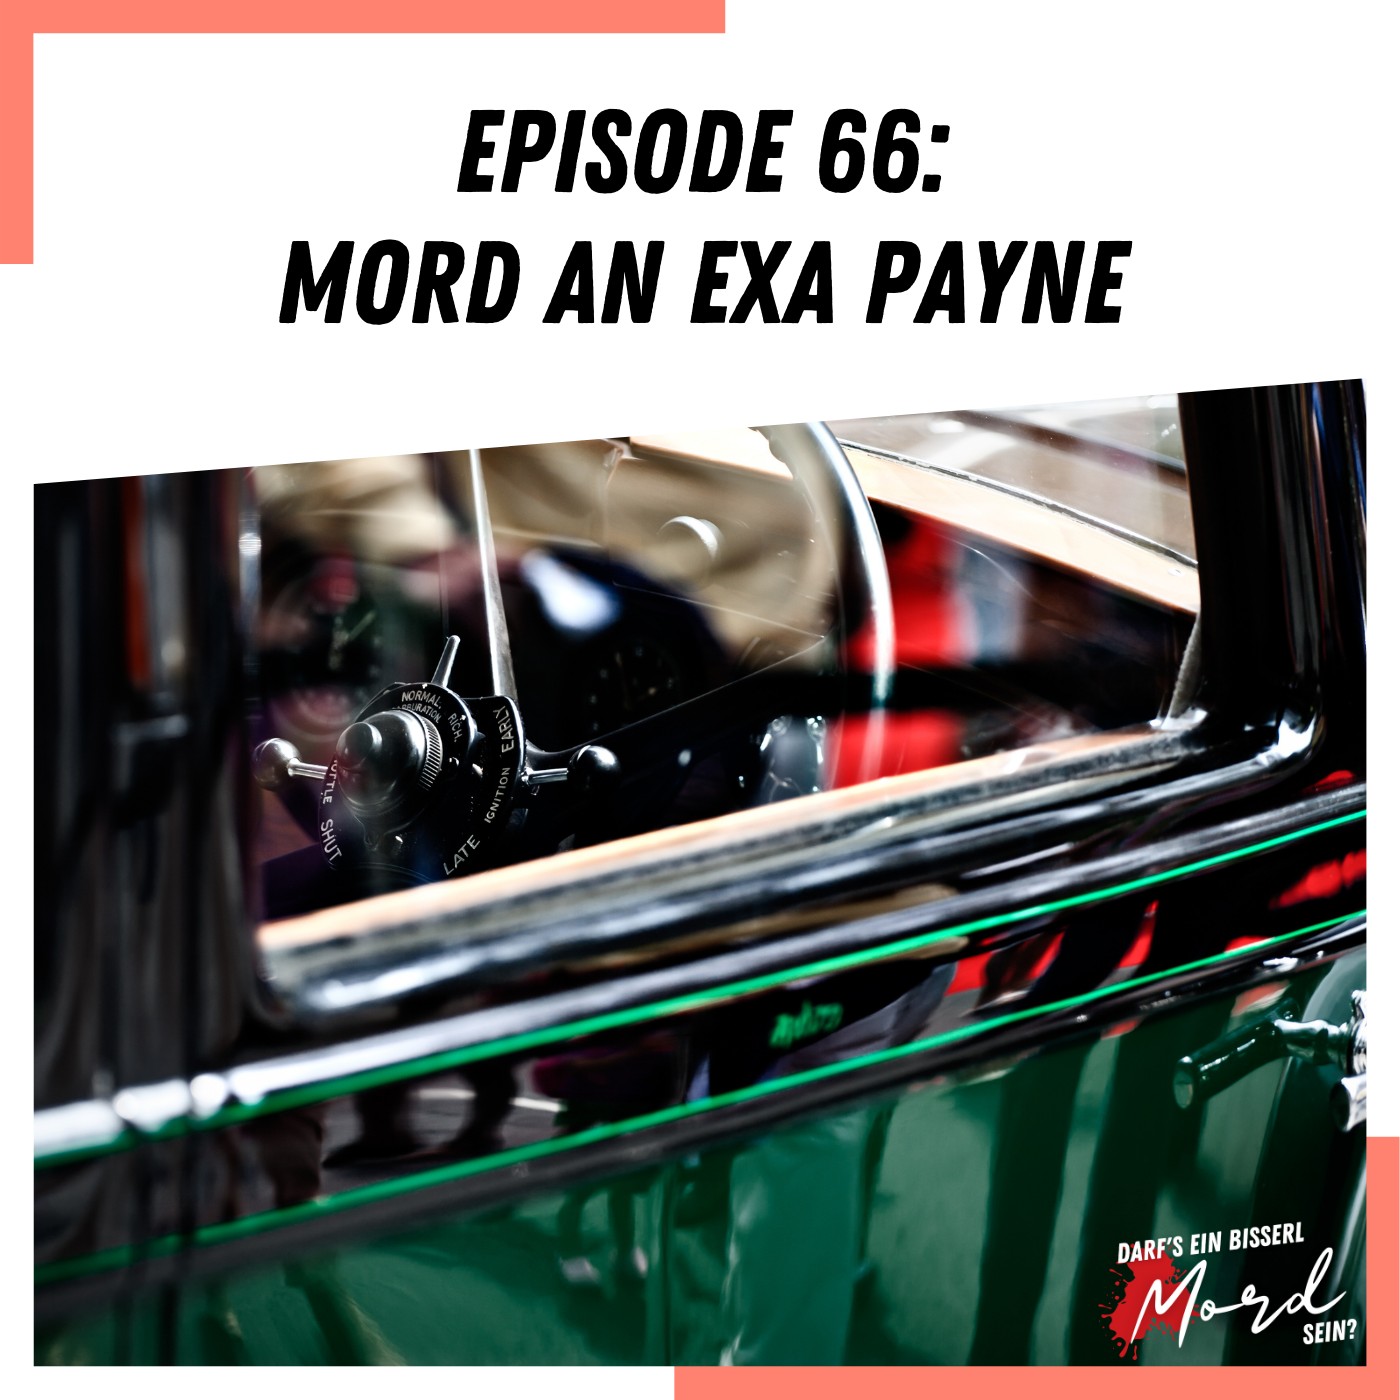 Episode 66: Mord an Exa Payne